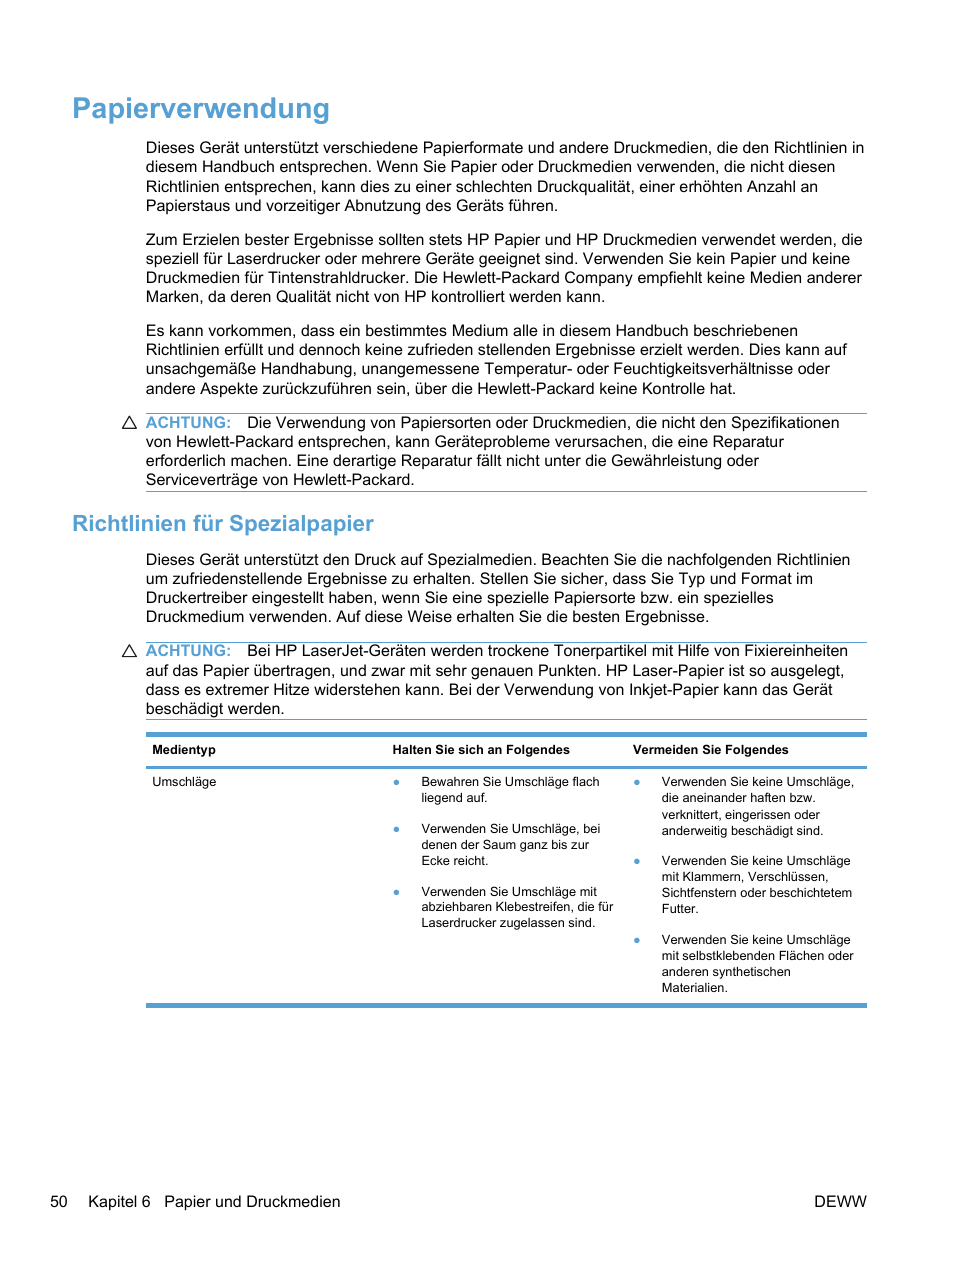 Papierverwendung, Richtlinien für spezialpapier | HP LaserJet Pro M1536dnf MFP SERIES Benutzerhandbuch | Seite 64 / 314